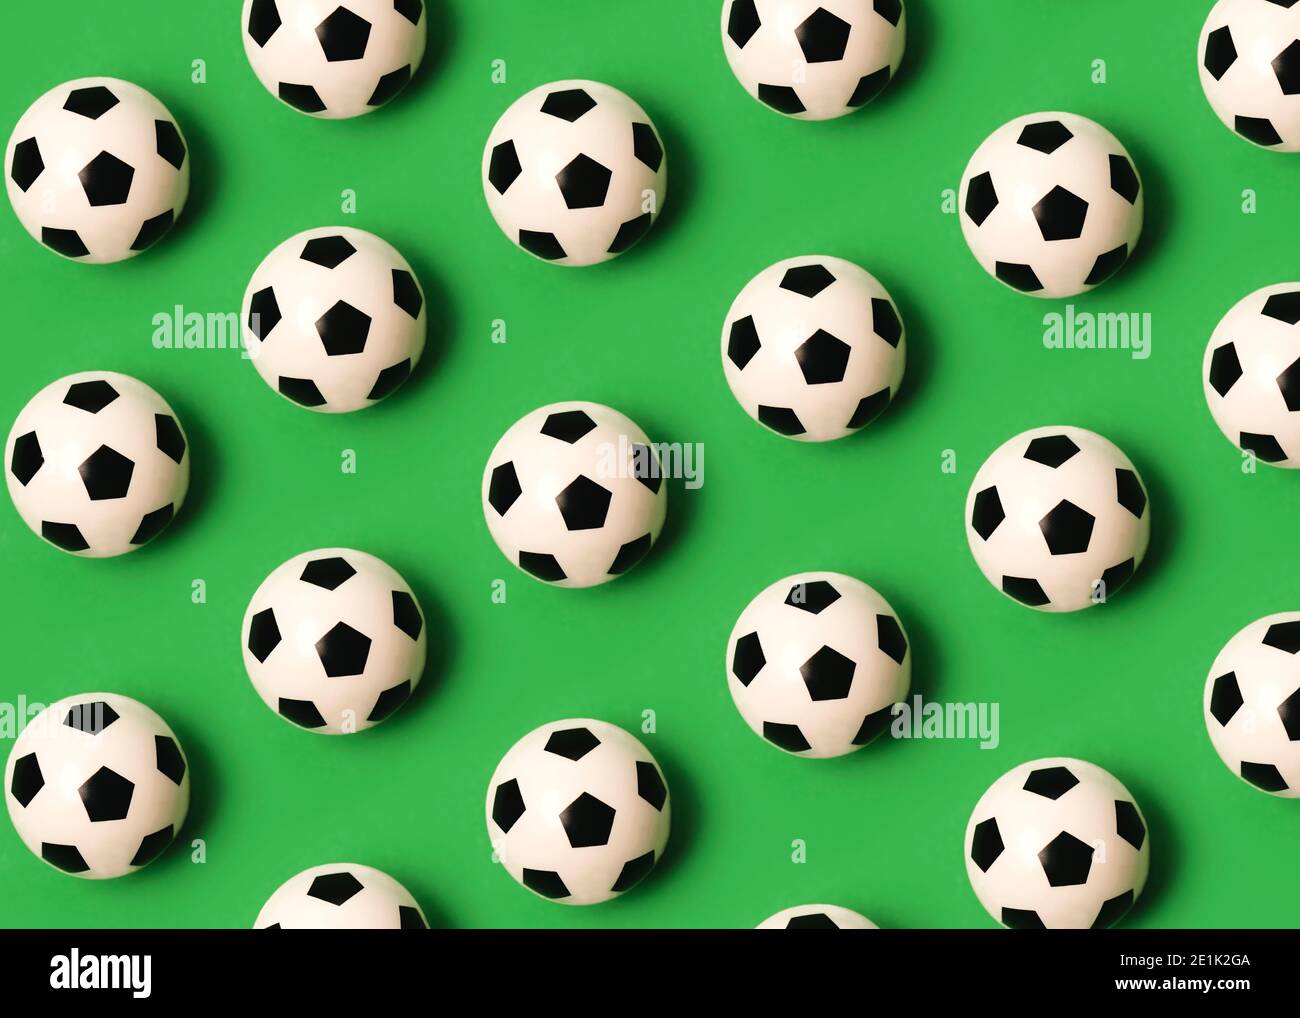 Motif géométrique composé de ballons de football sur fond vert Banque D'Images